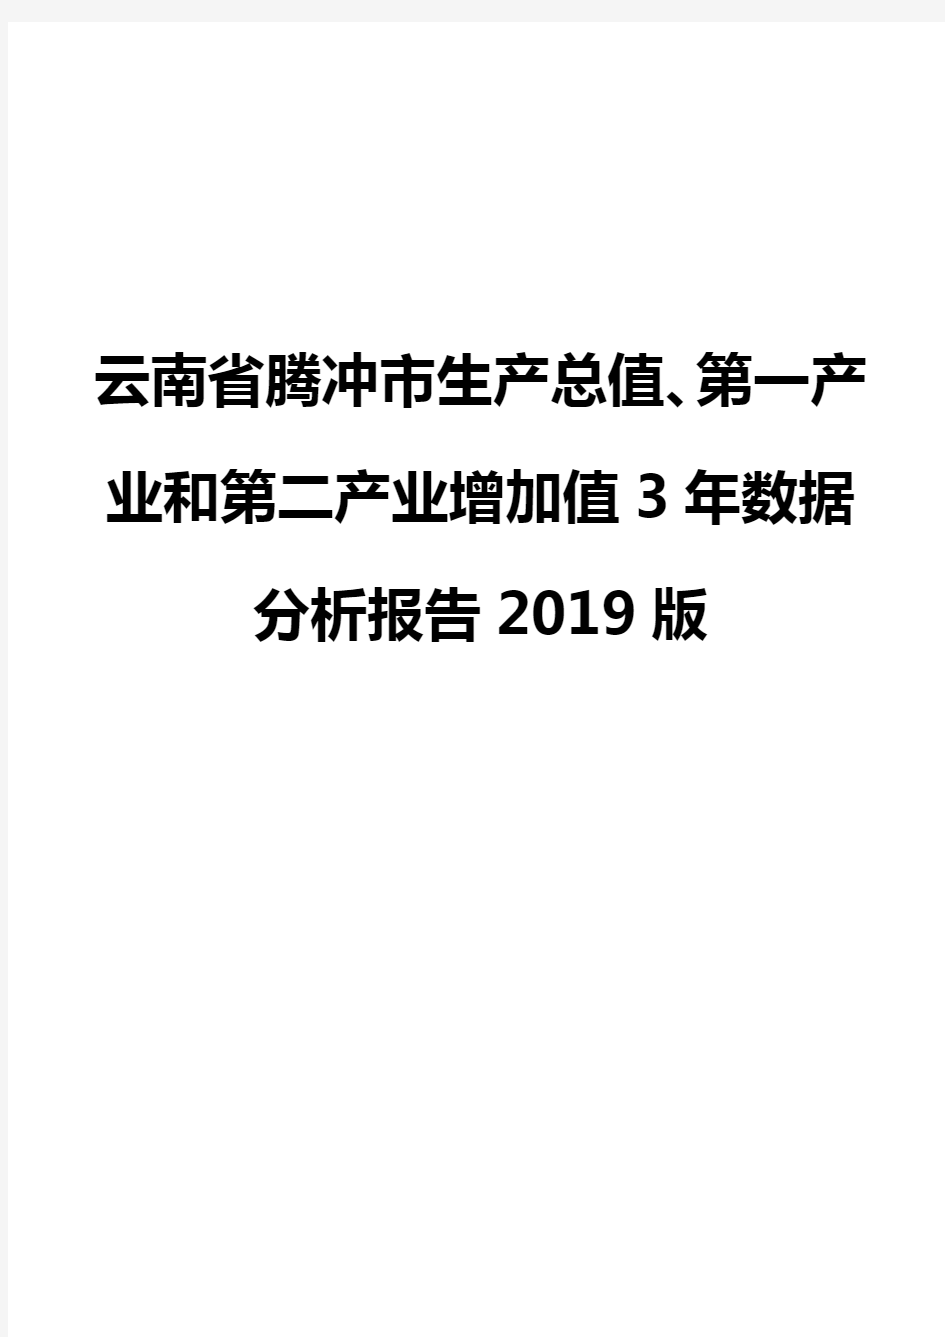 云南省腾冲市生产总值、第一产业和第二产业增加值3年数据分析报告2019版